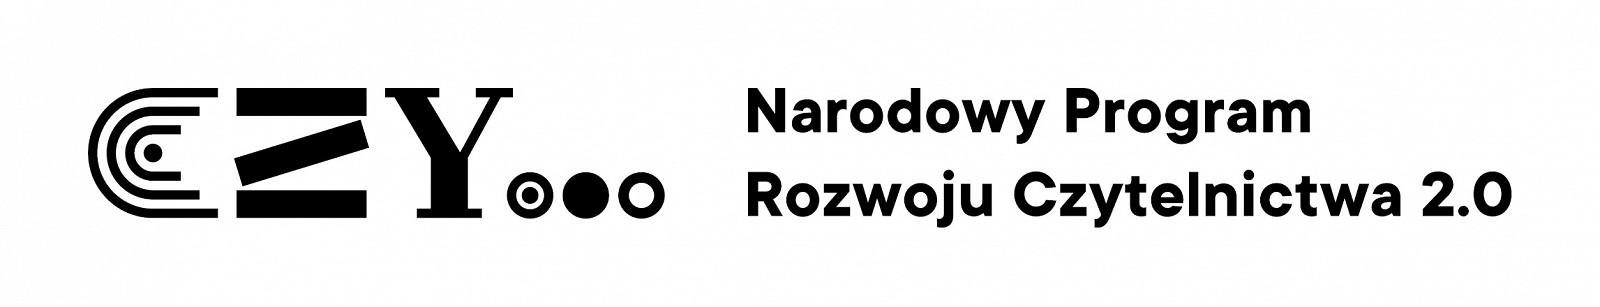 Logotyp Narodowy Program Rozwoju Czytelnictwa 2.0.jpg [91.47 KB]